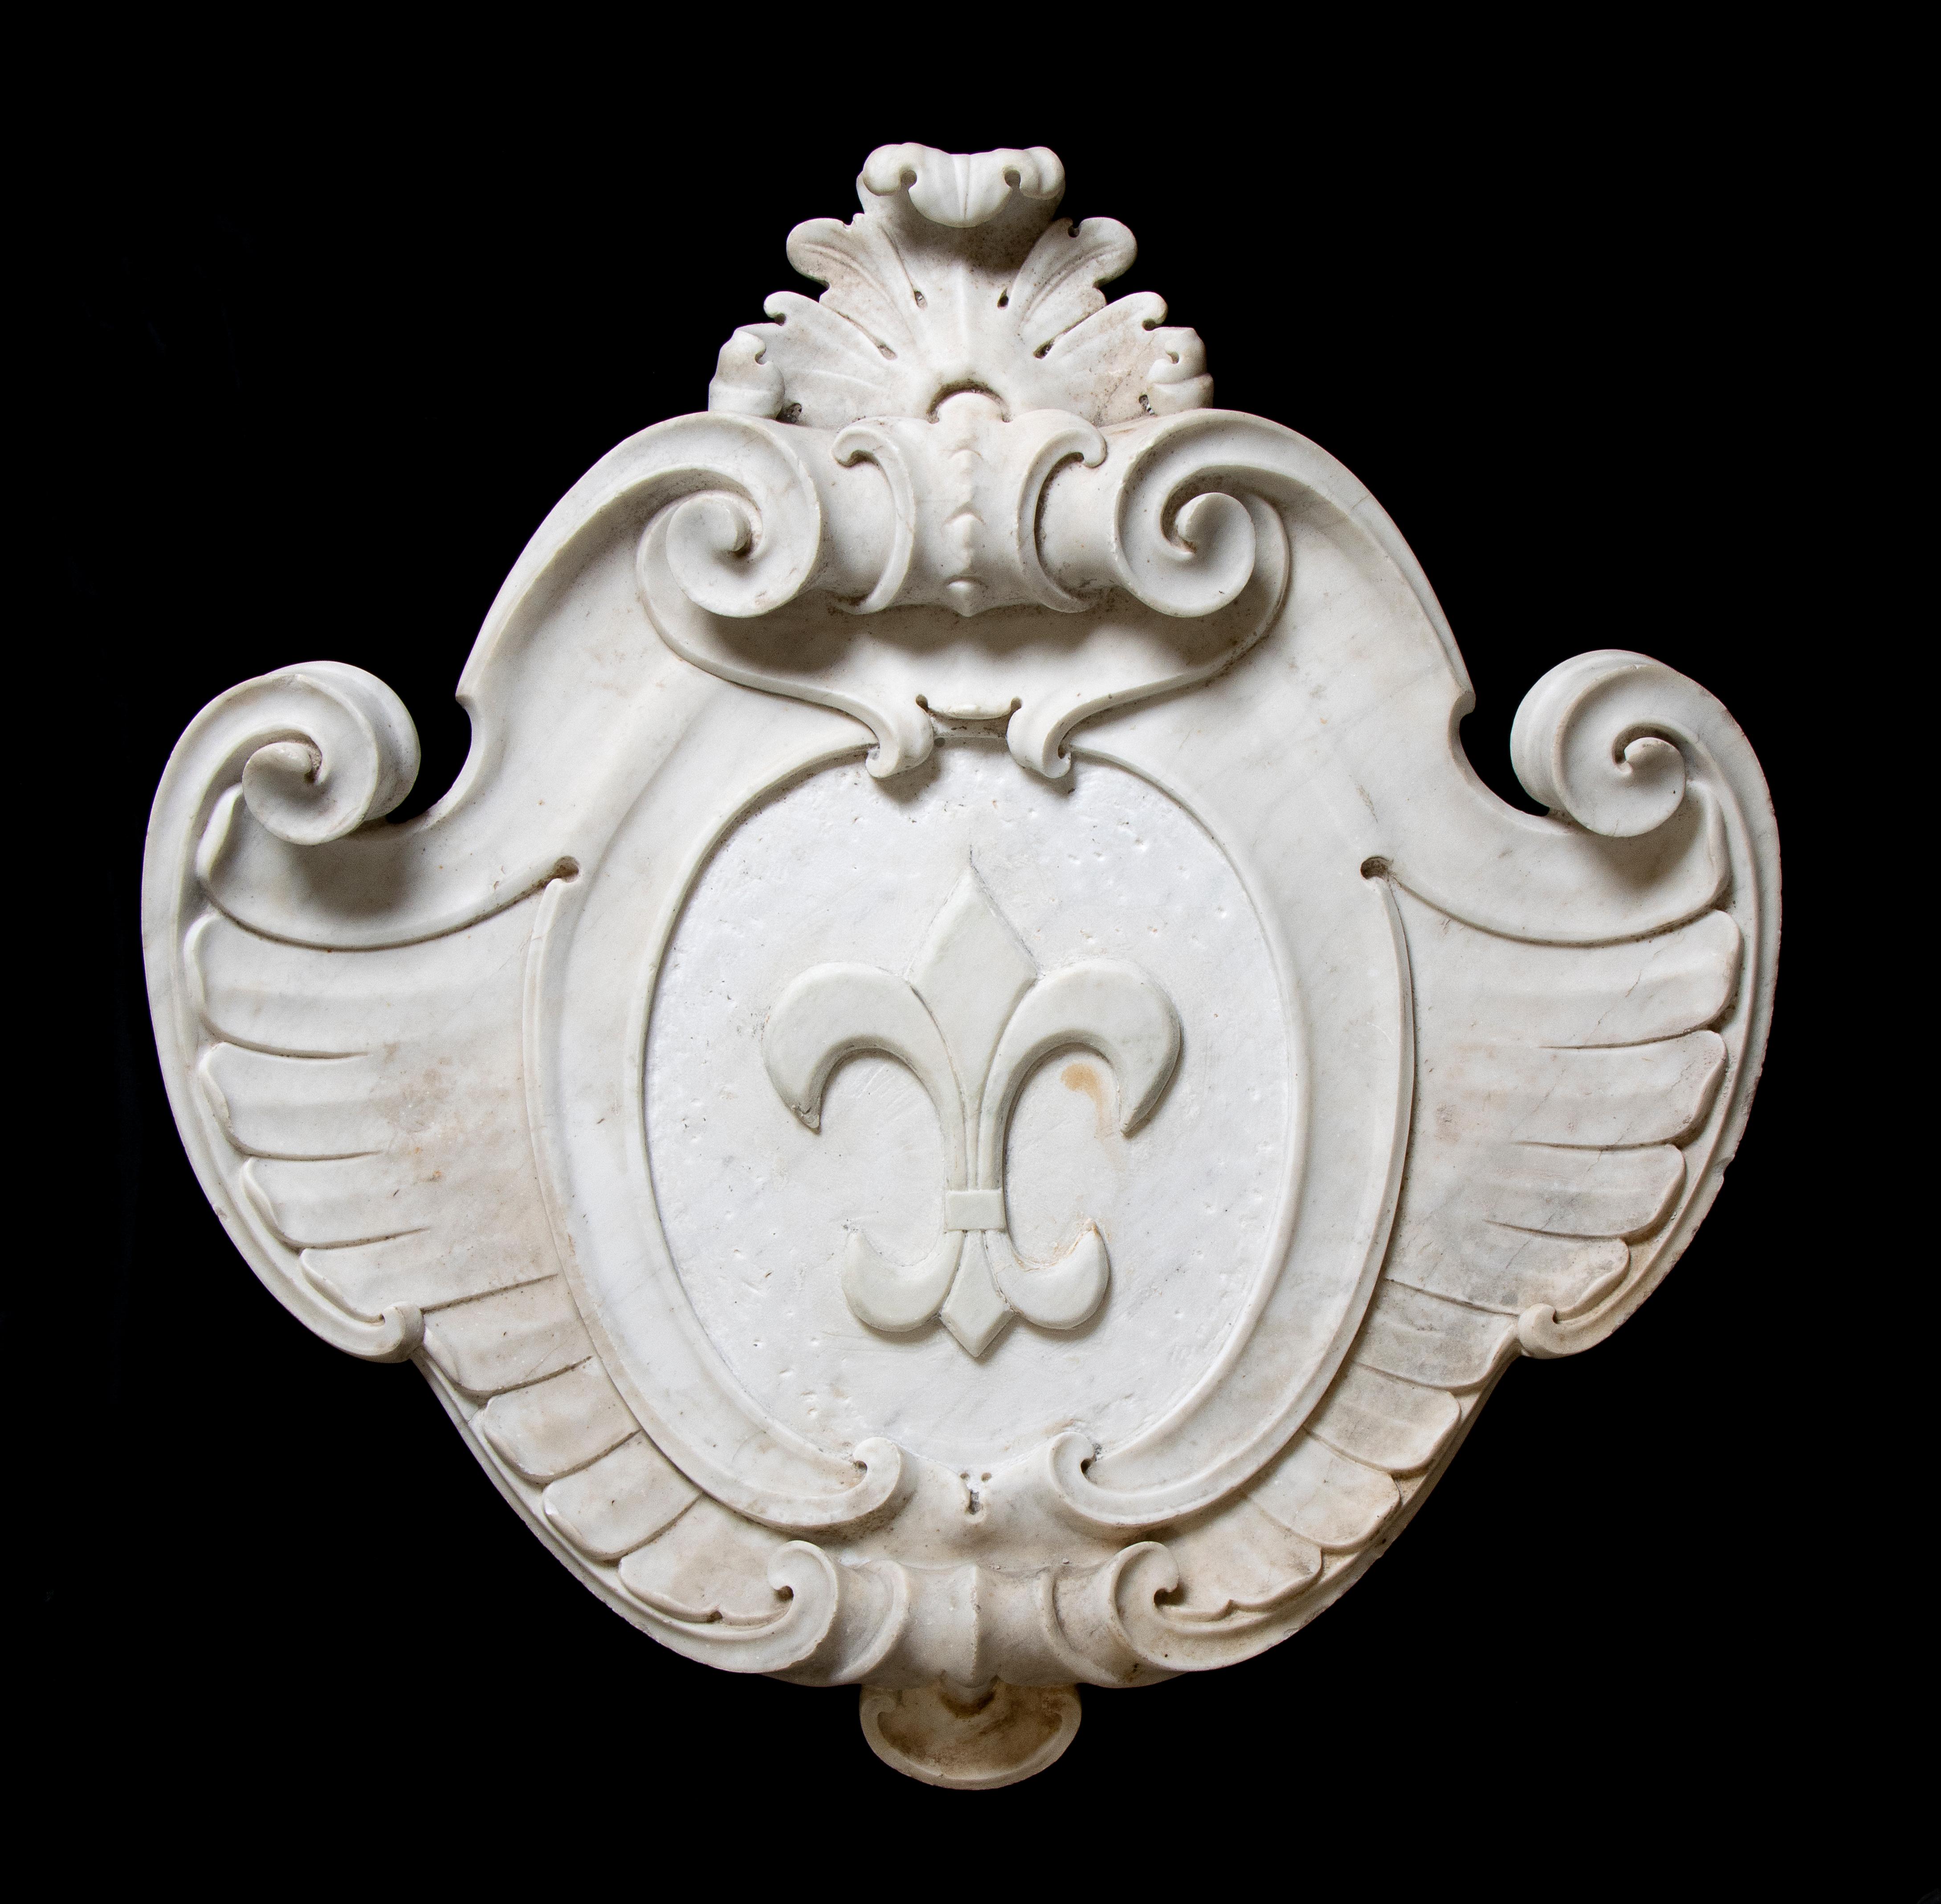 Unknown Figurative Sculpture - White Marble Sculpture Coat Of Arm With Fleur-de-lis 